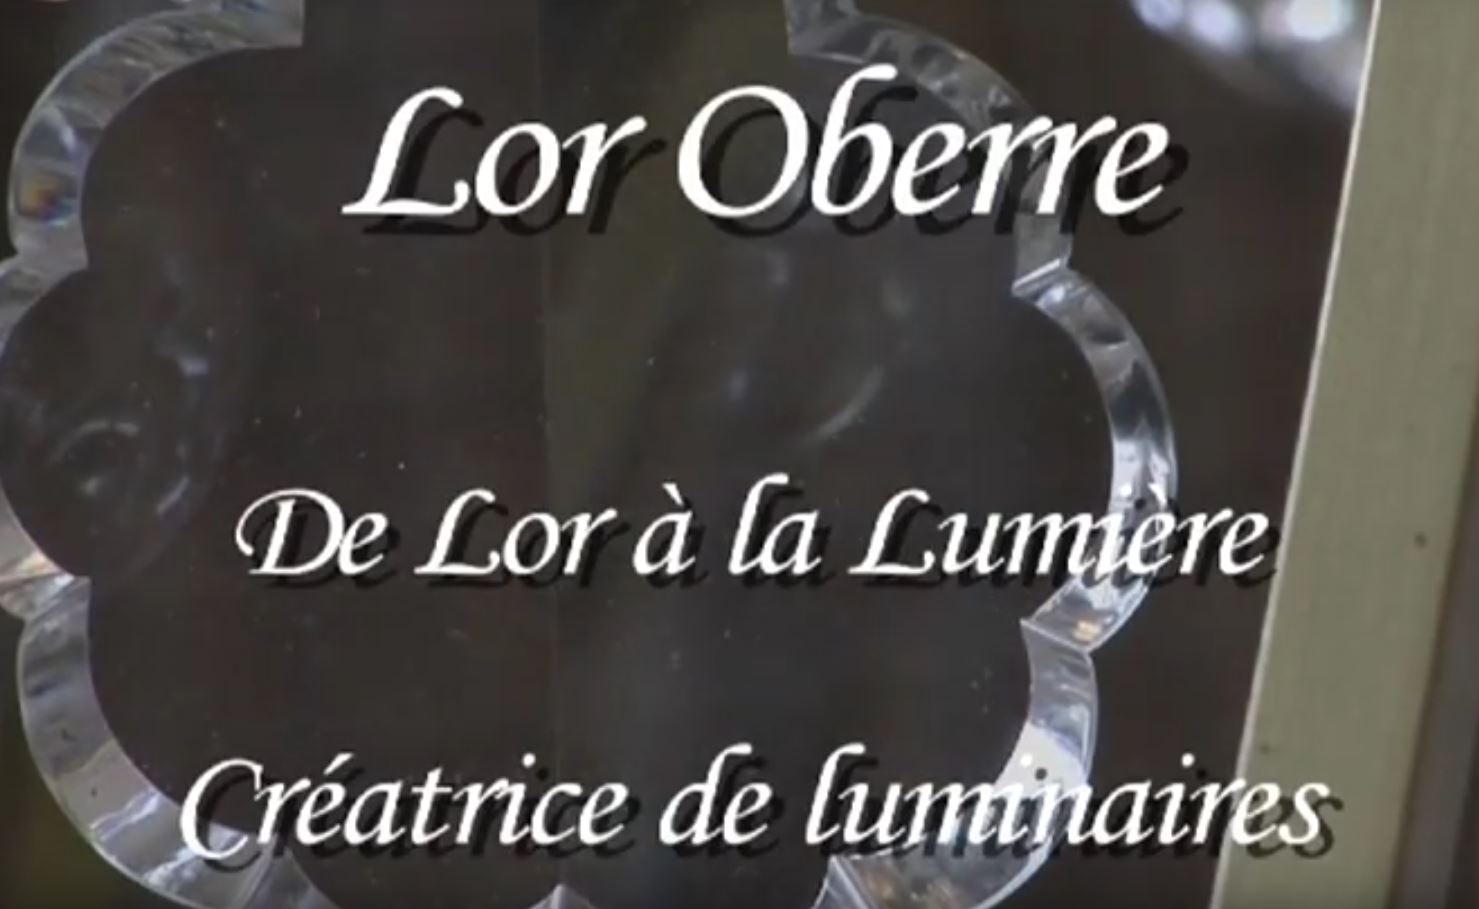 Lor Oberre prix du Jeune Talent du Jura Francais 2006